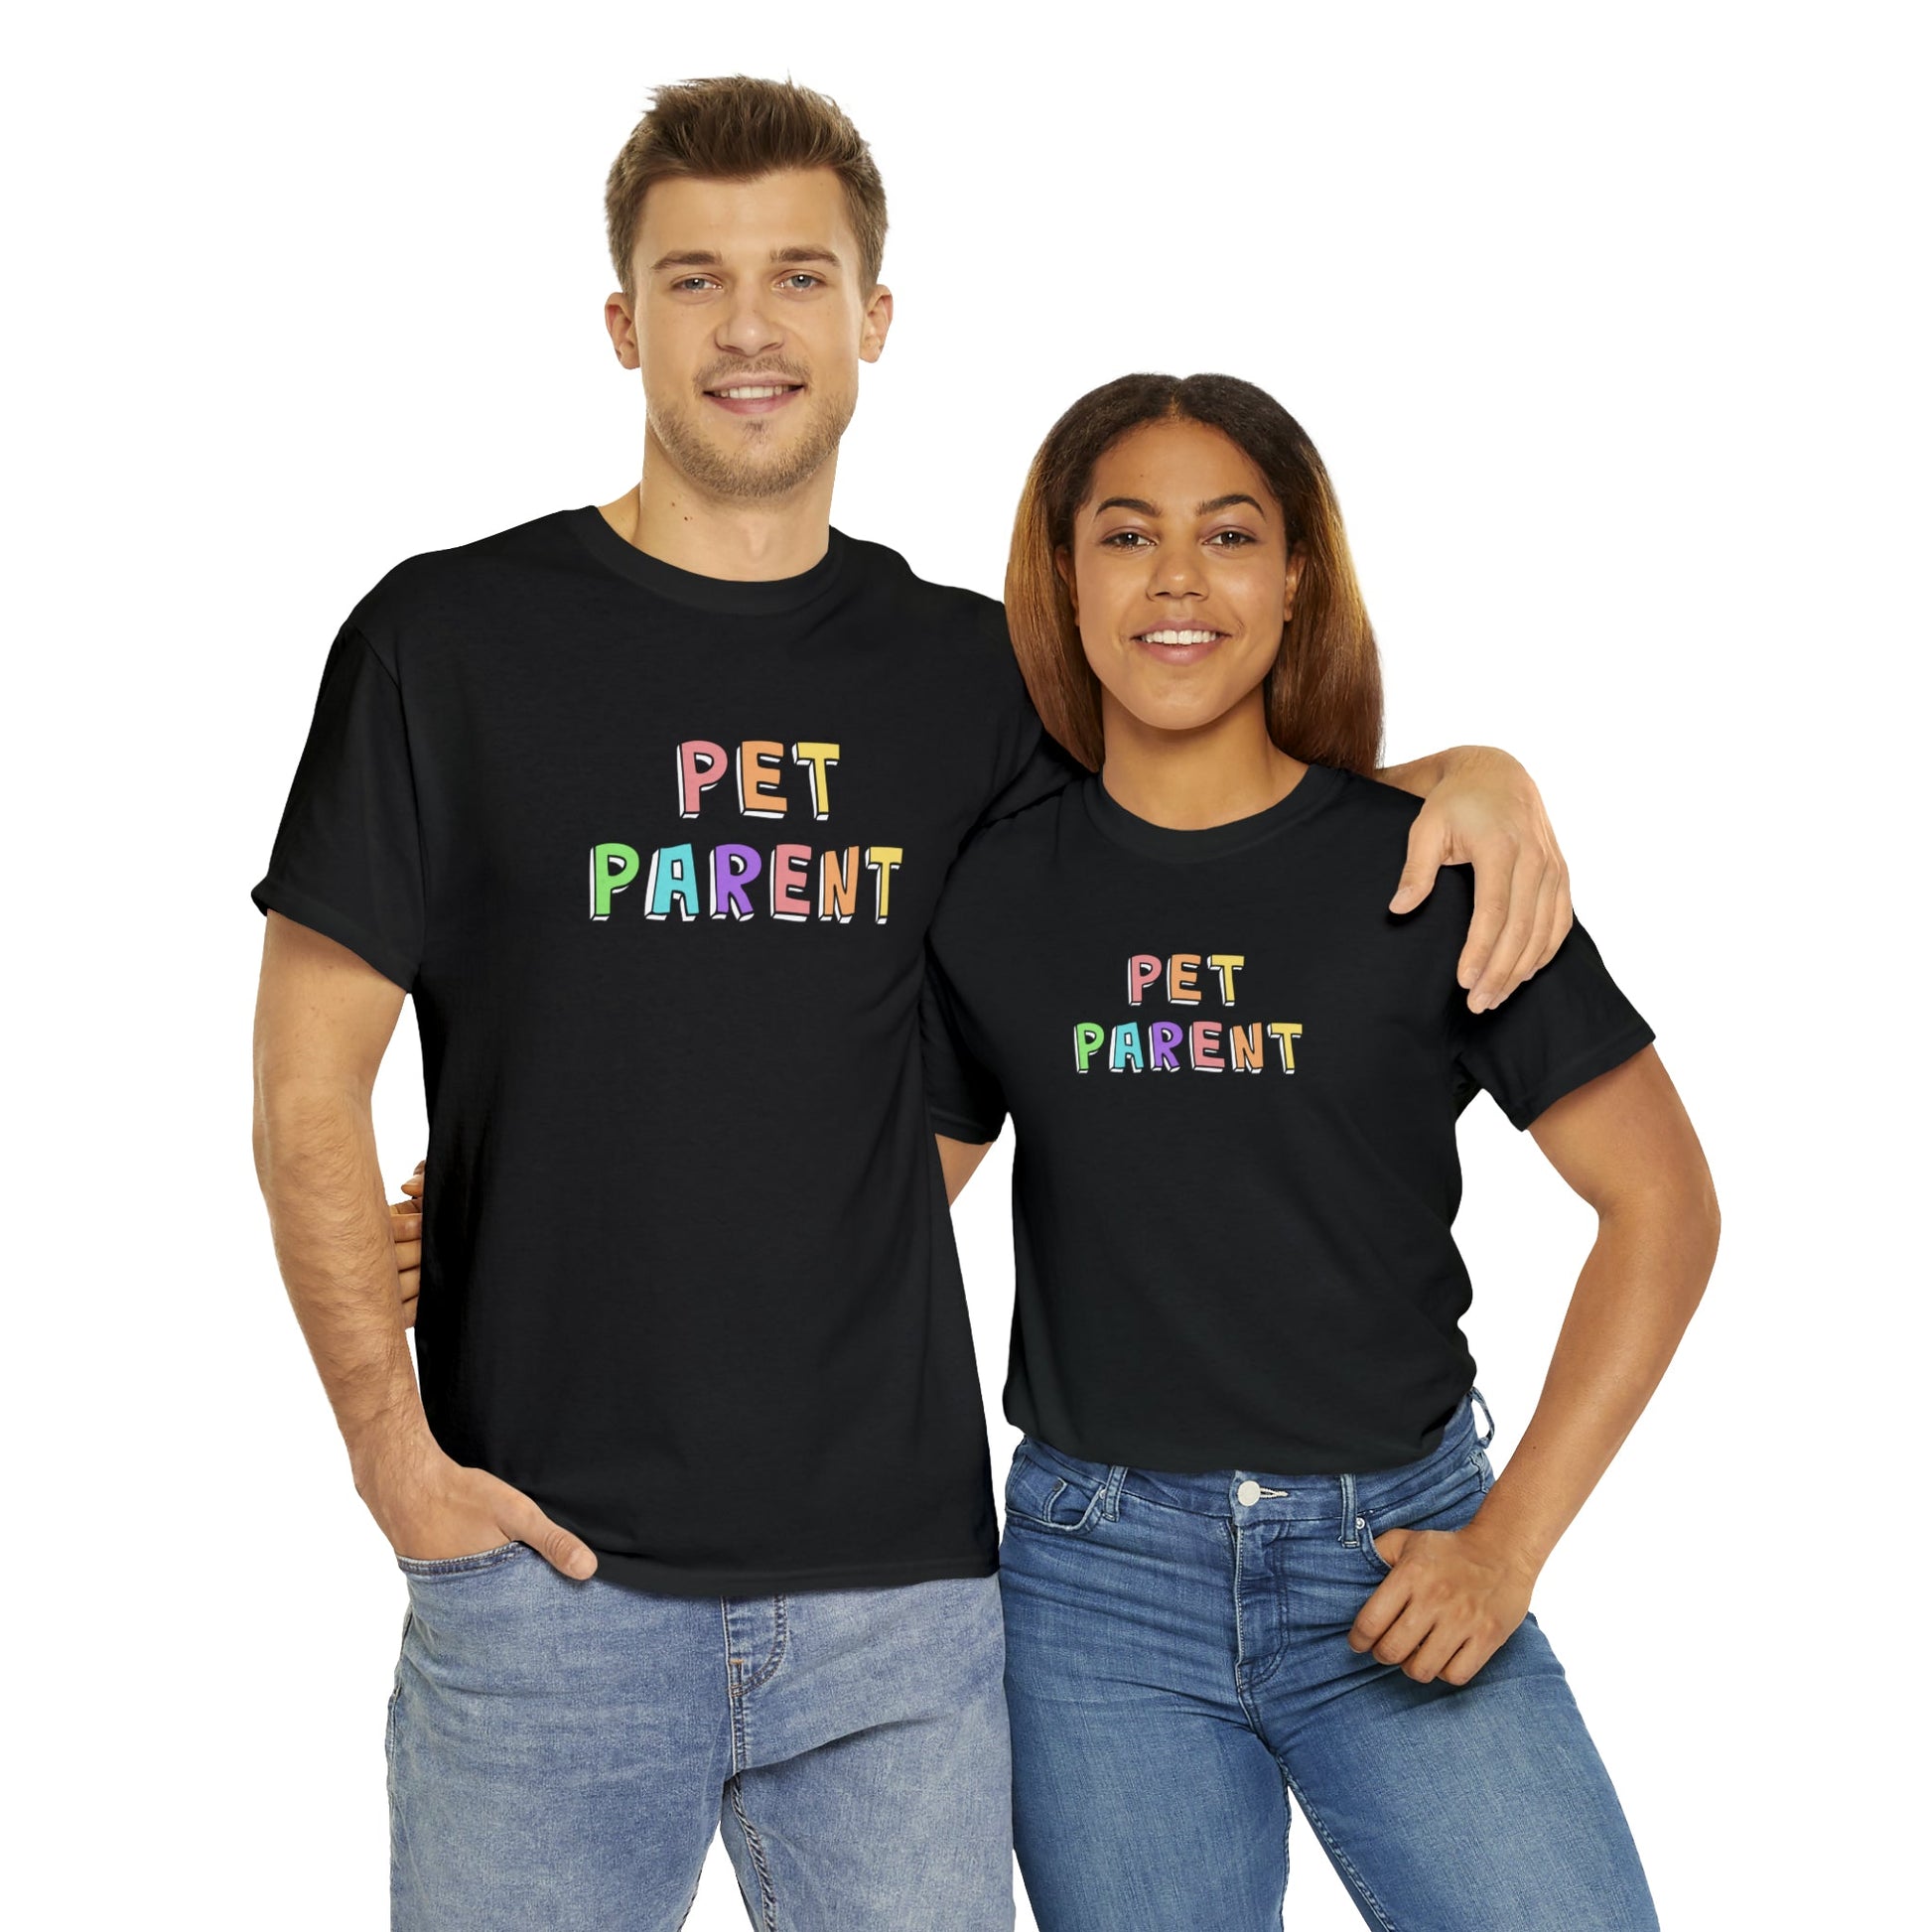 Pet Parent | Text Tees - Detezi Designs-37812786981272709102